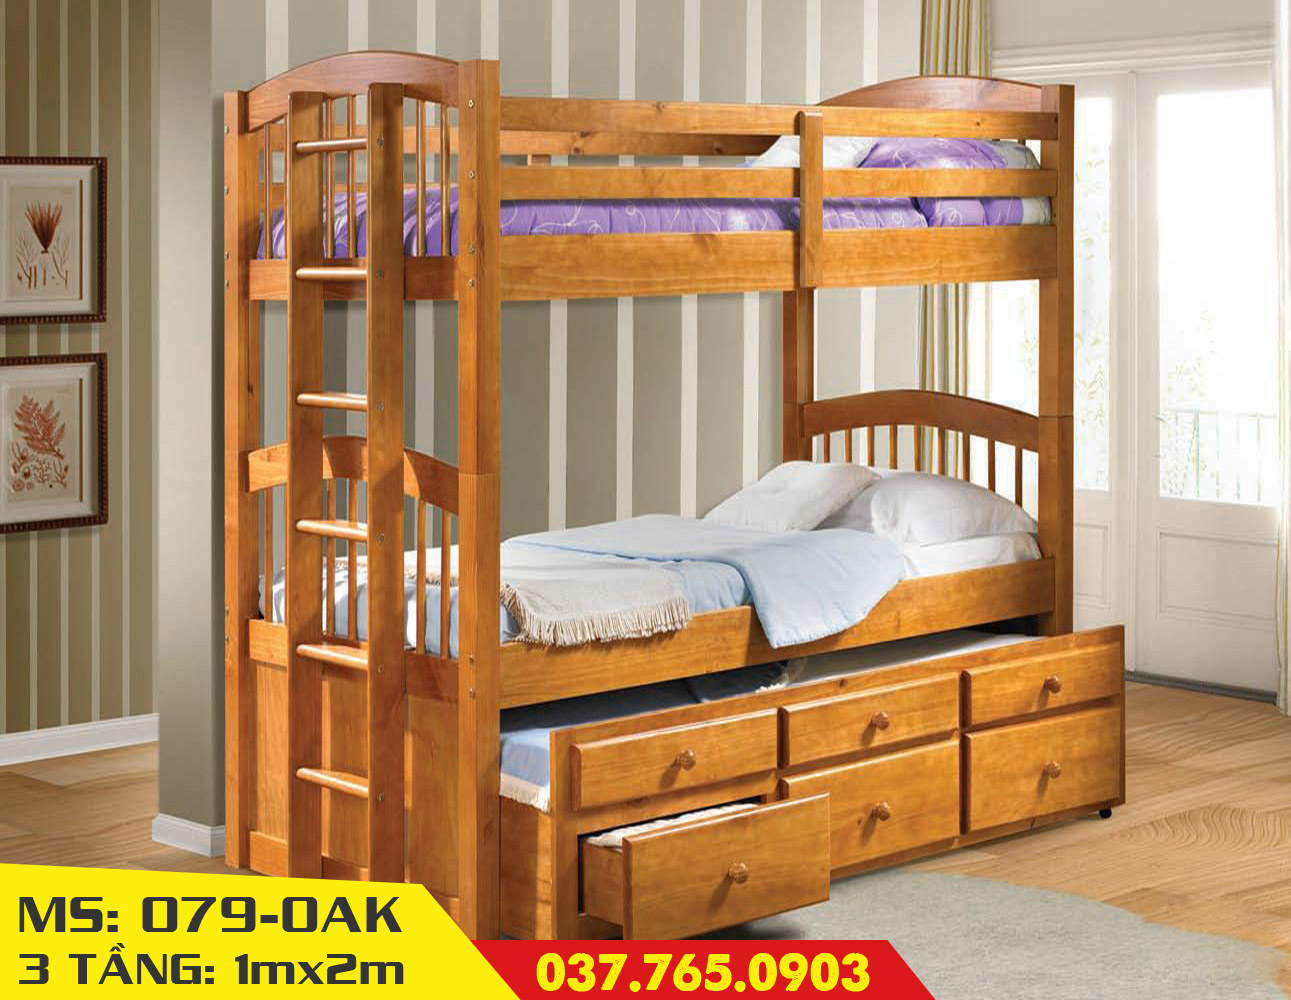 Với kiểu dáng độc đáo và phong cách hiện đại, giường 3 tầng màu vàng gỗ trở thành món đồ nội thất được yêu thích trong năm